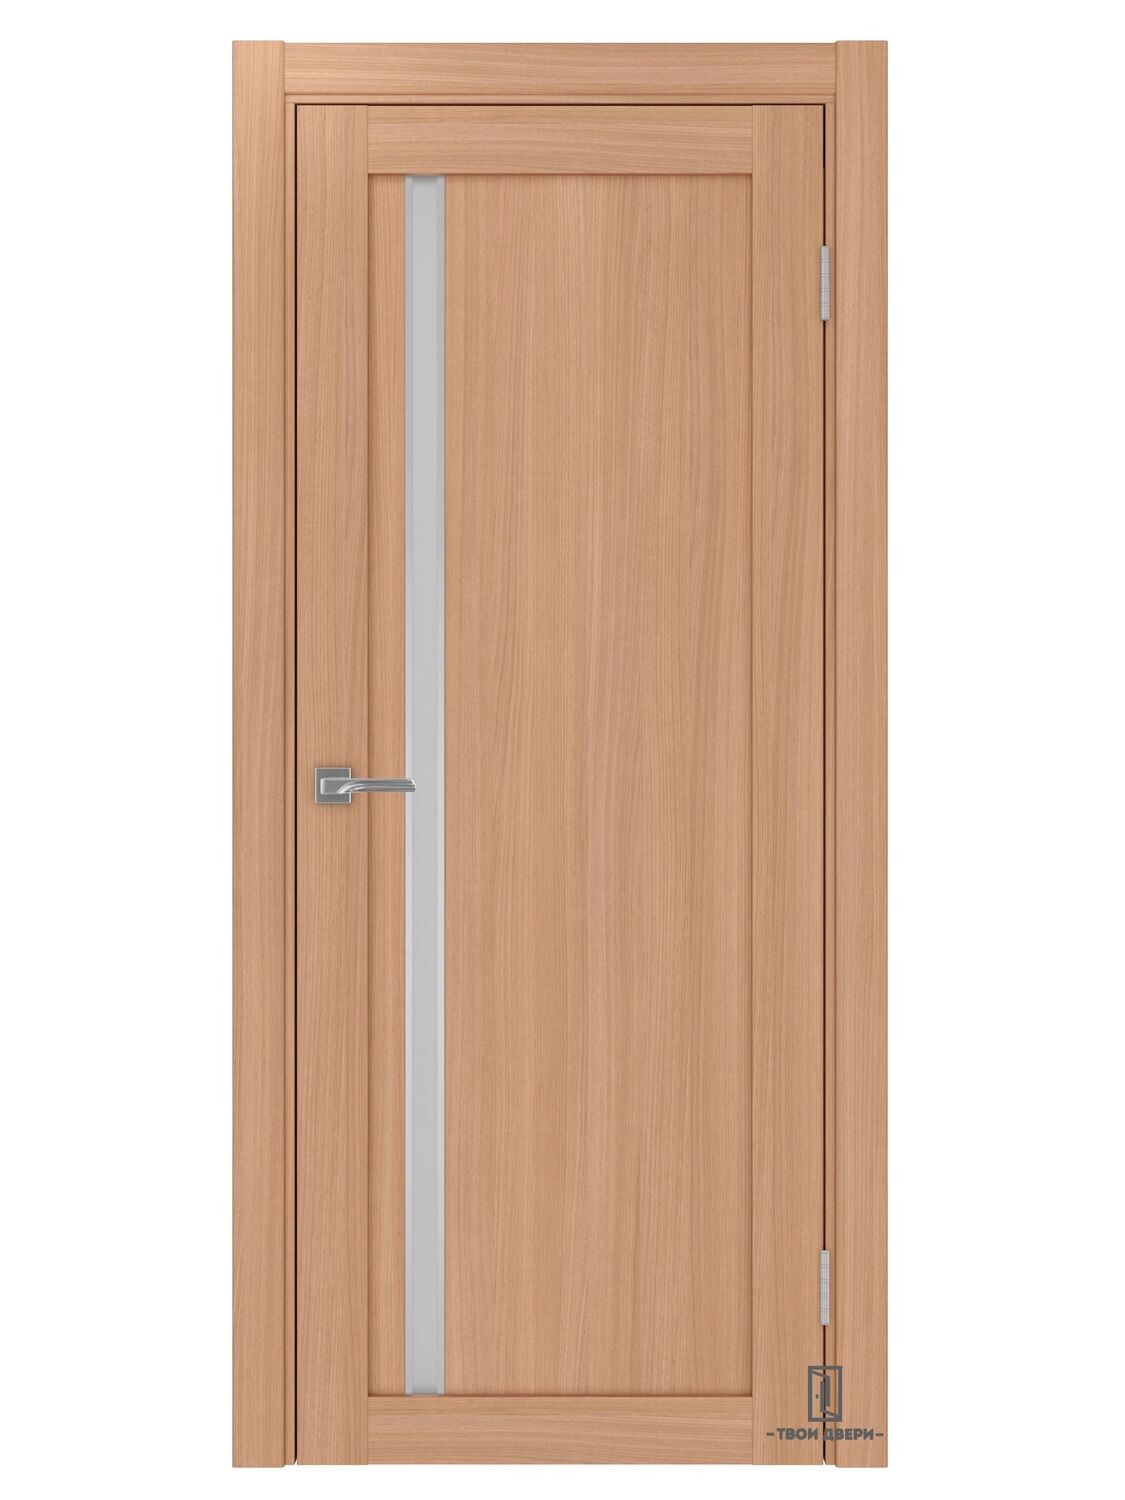 Дверь межкомнатная АПС 527 (молдинги), ясень темный